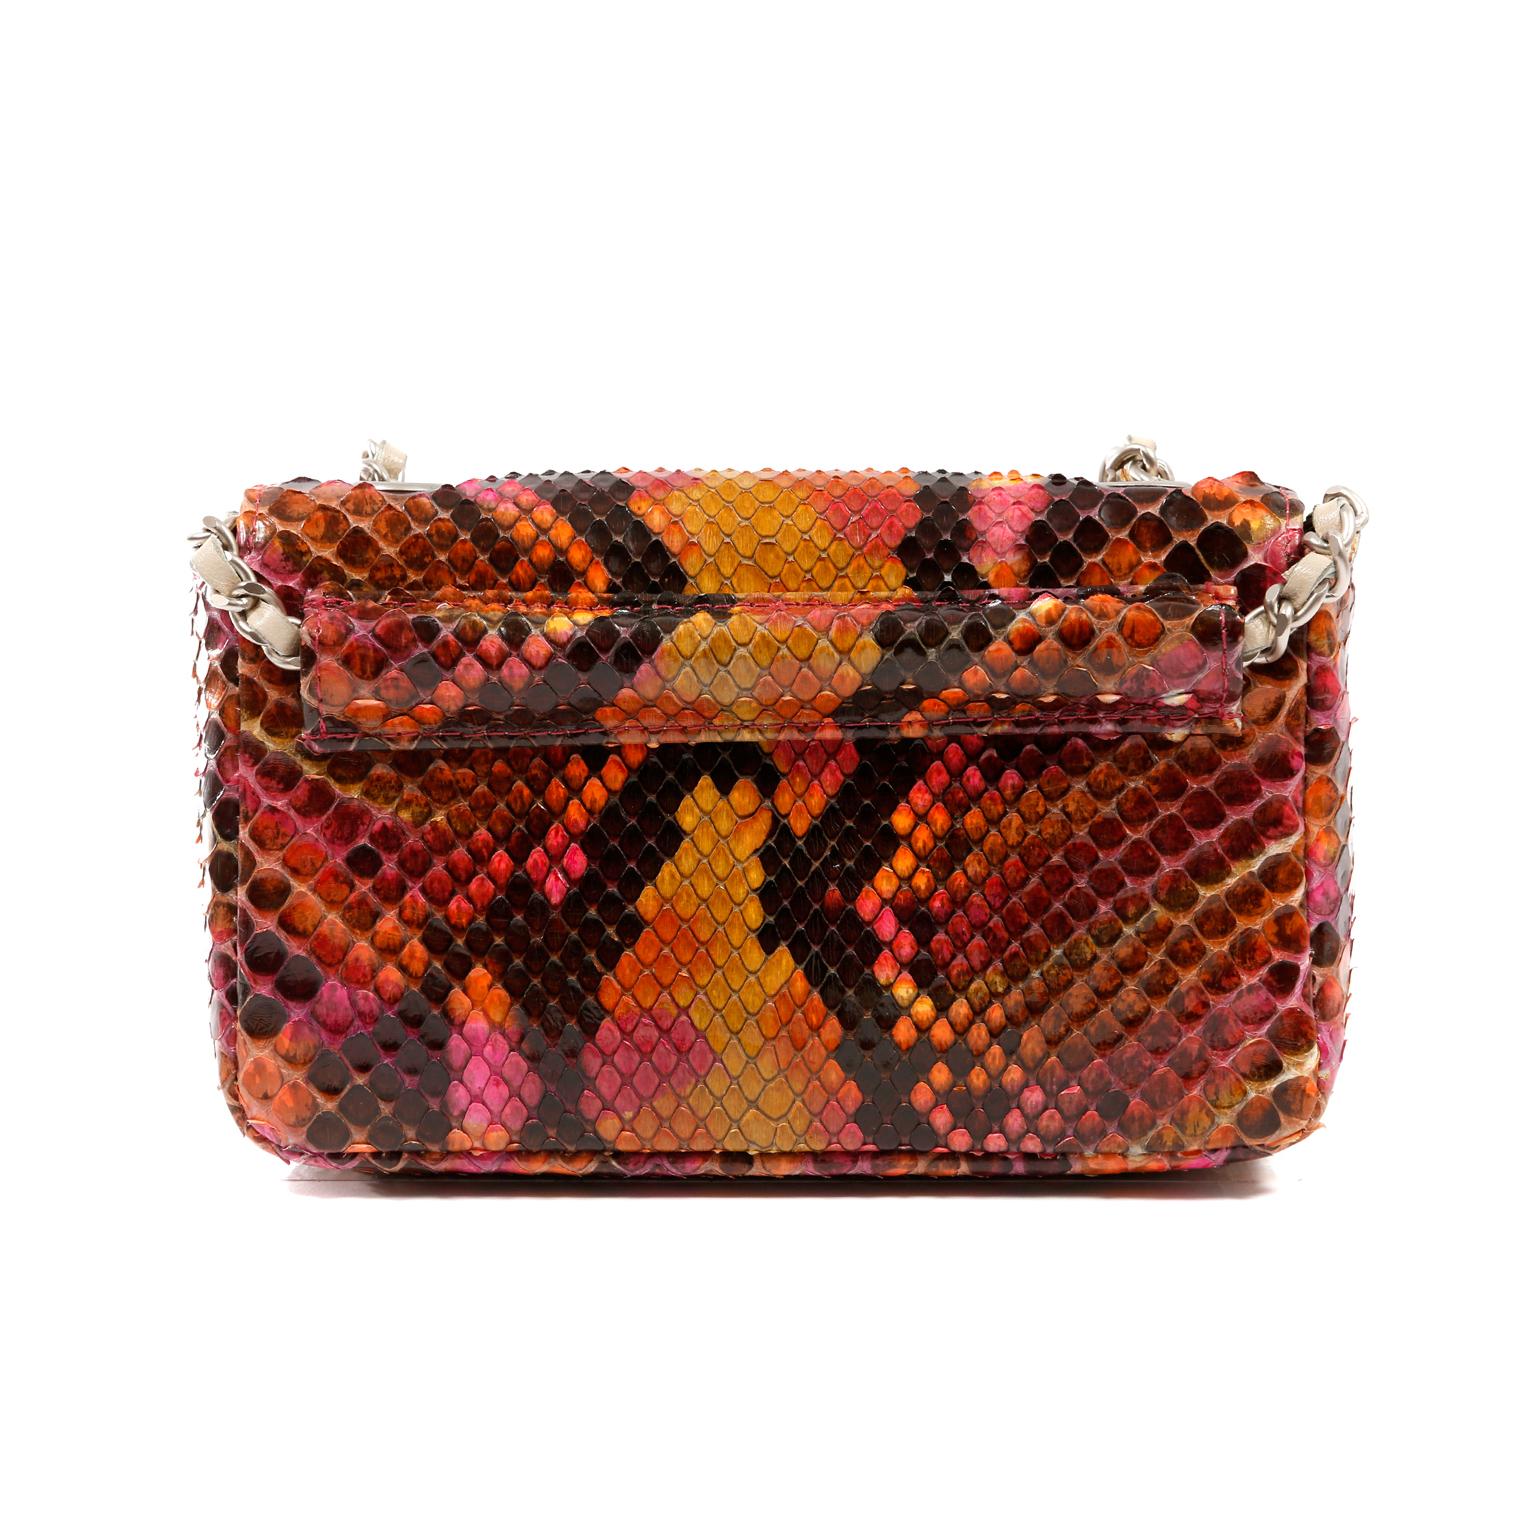 Diese authentische Chanel Multicolor Python Mini Flap Bag ist in ausgezeichnetem Zustand.  Ein fabelhaftes, vielseitiges Stück, das als Umhängetasche oder als Gürtel getragen werden kann. 
Leuchtend bunte Mini-Klapptasche aus Pythonleder in Orange-